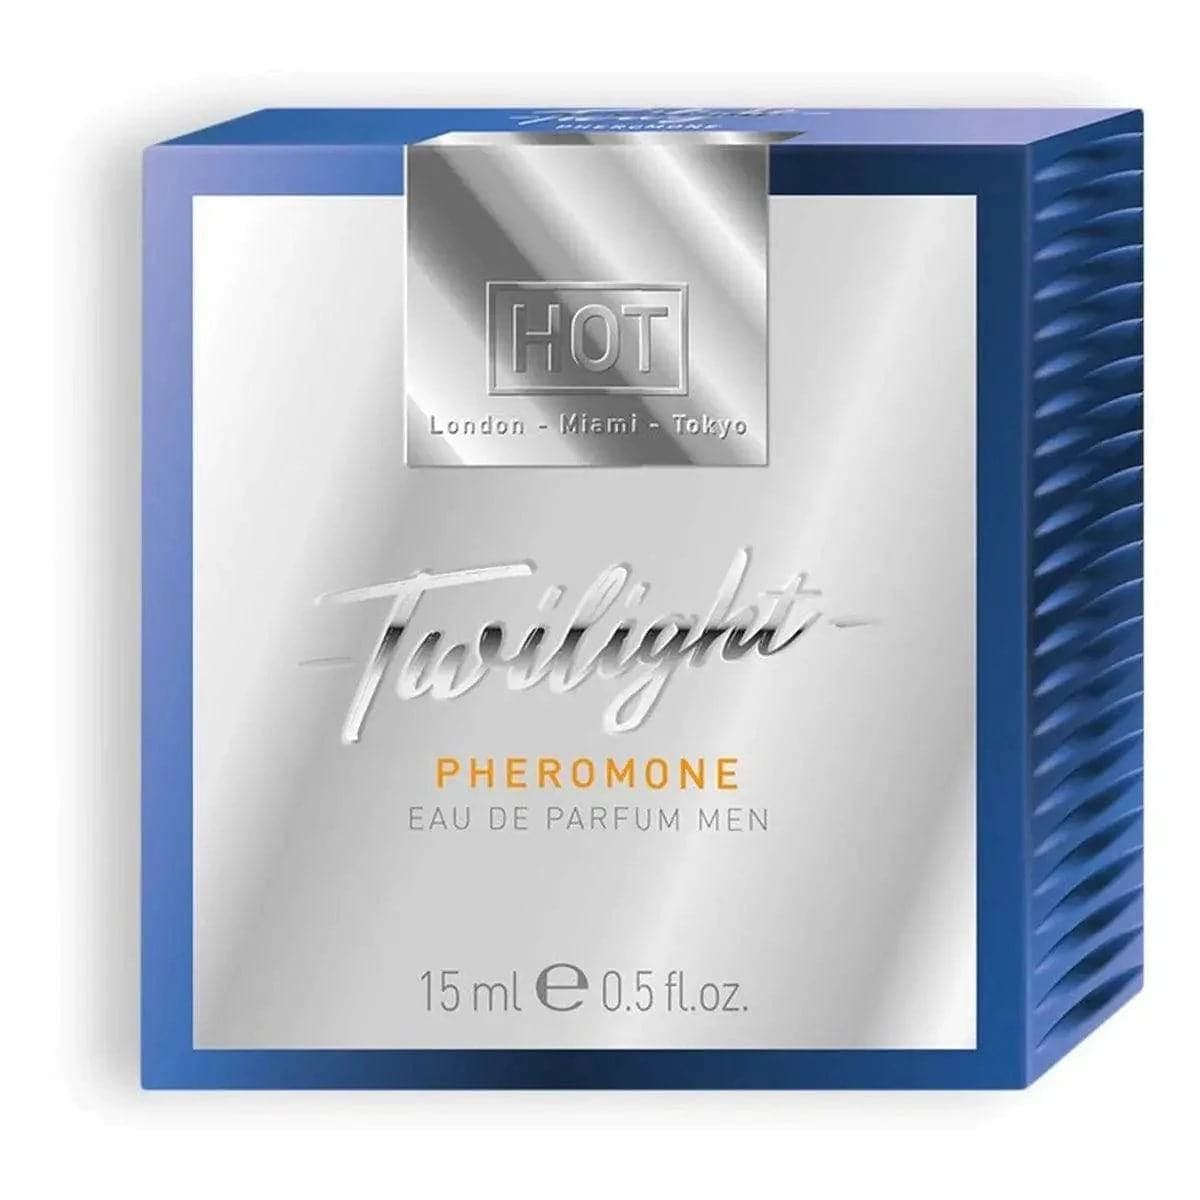 Perfume Homem com Feromonas Twilight 15ml - Fragrância clássica e irresistível